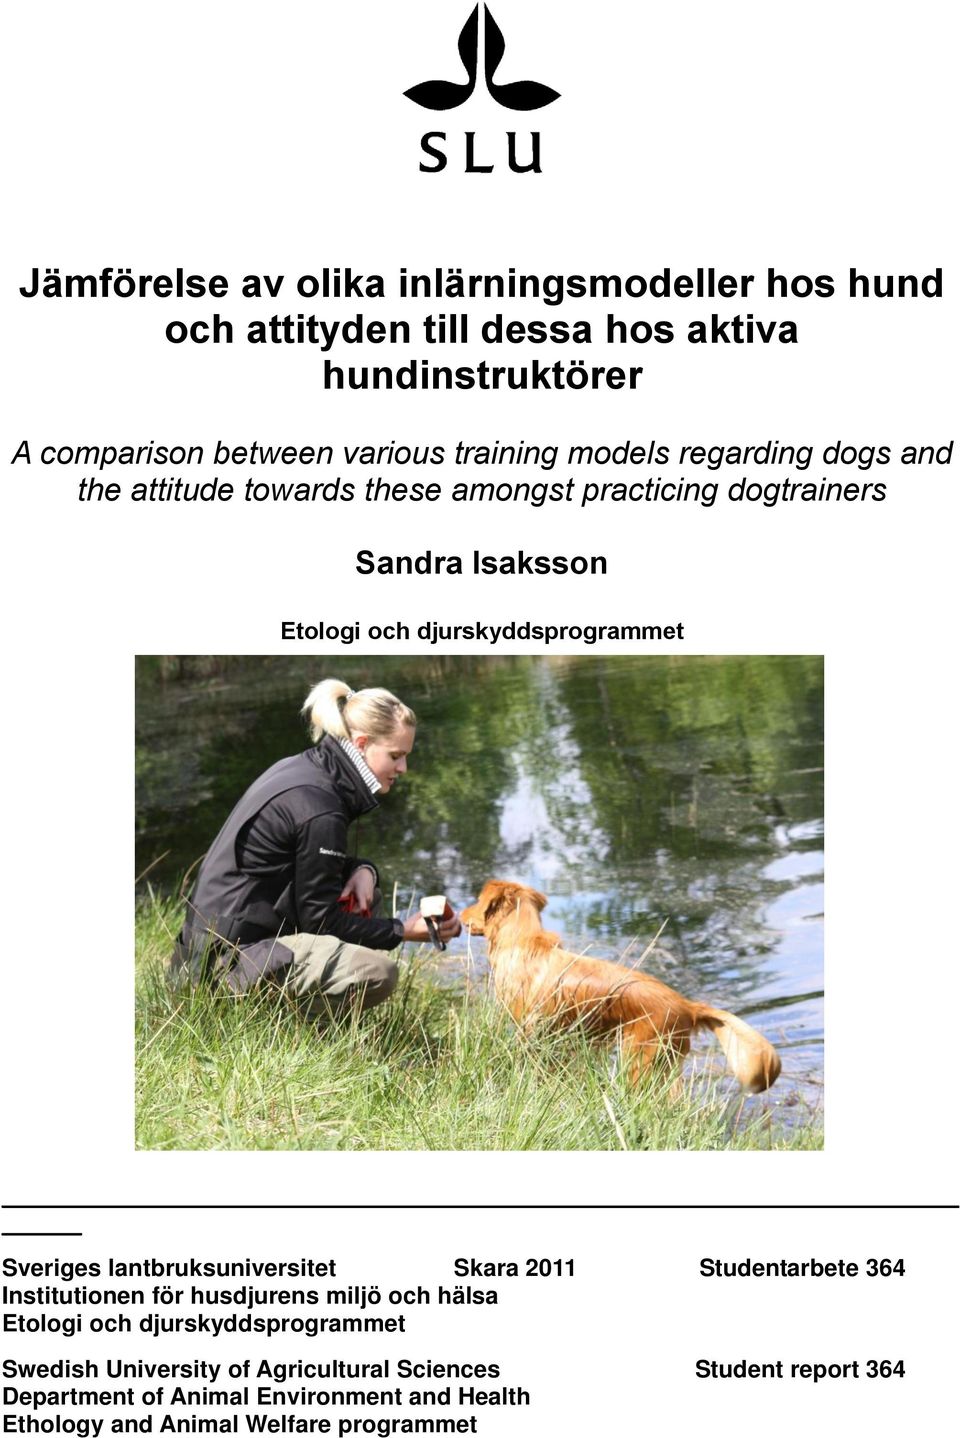 Sveriges lantbruksuniversitet Skara 2011 Studentarbete 364 Institutionen för husdjurens miljö och hälsa Etologi och djurskyddsprogrammet